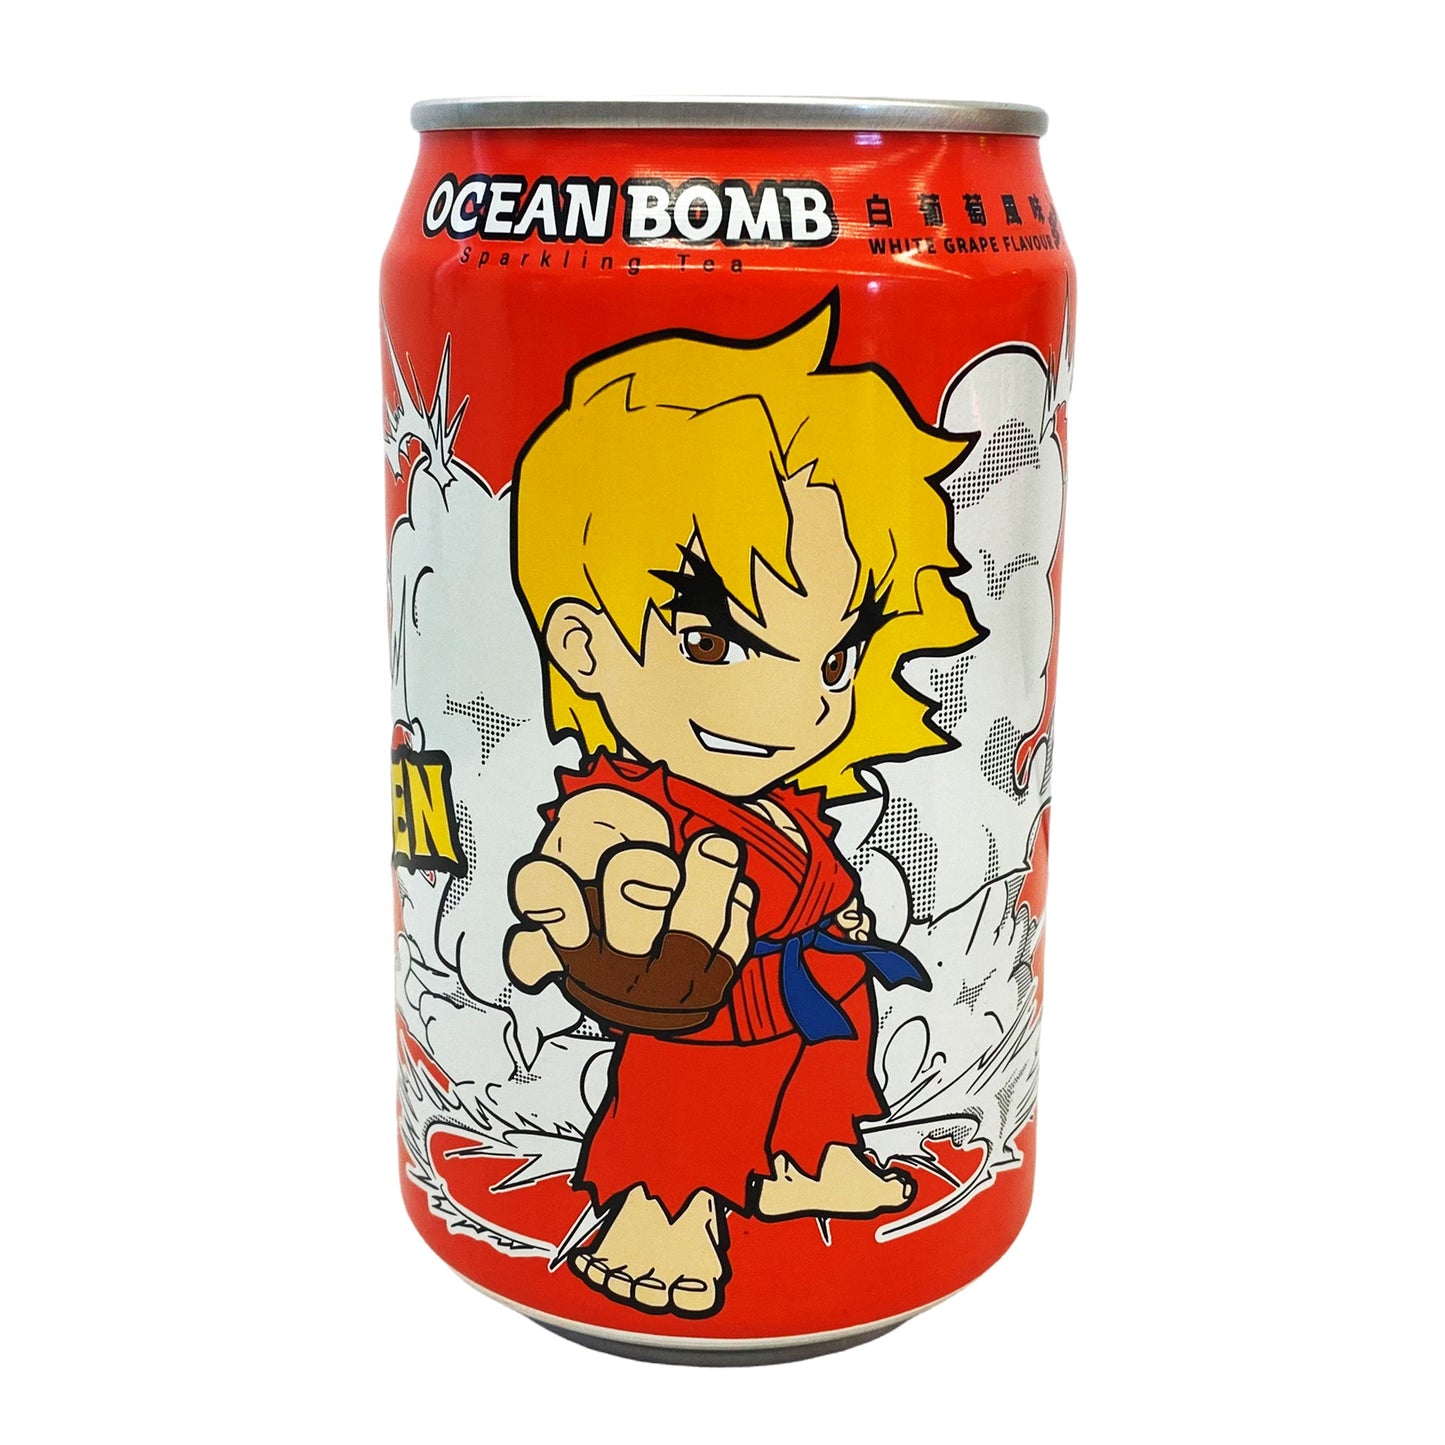 Ocean Bomb Street Fighter Ken Sparkling Tea - White Grape Flavor (330ml) 6-Pack